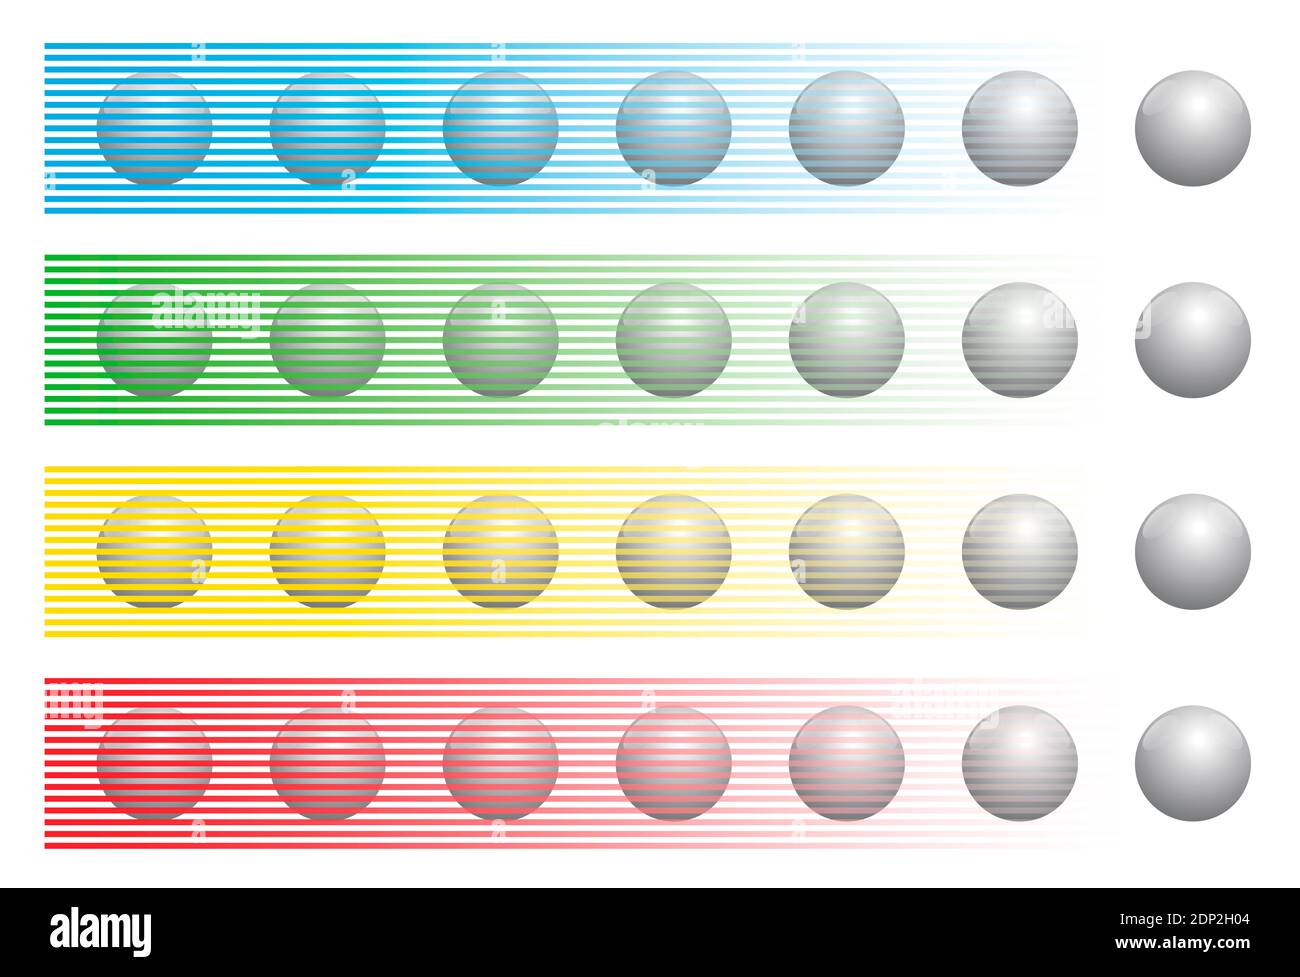 Illusione ottica con palline dello stesso colore dietro diverse strisce colorate, nota come illusione Munker-White. Foto Stock